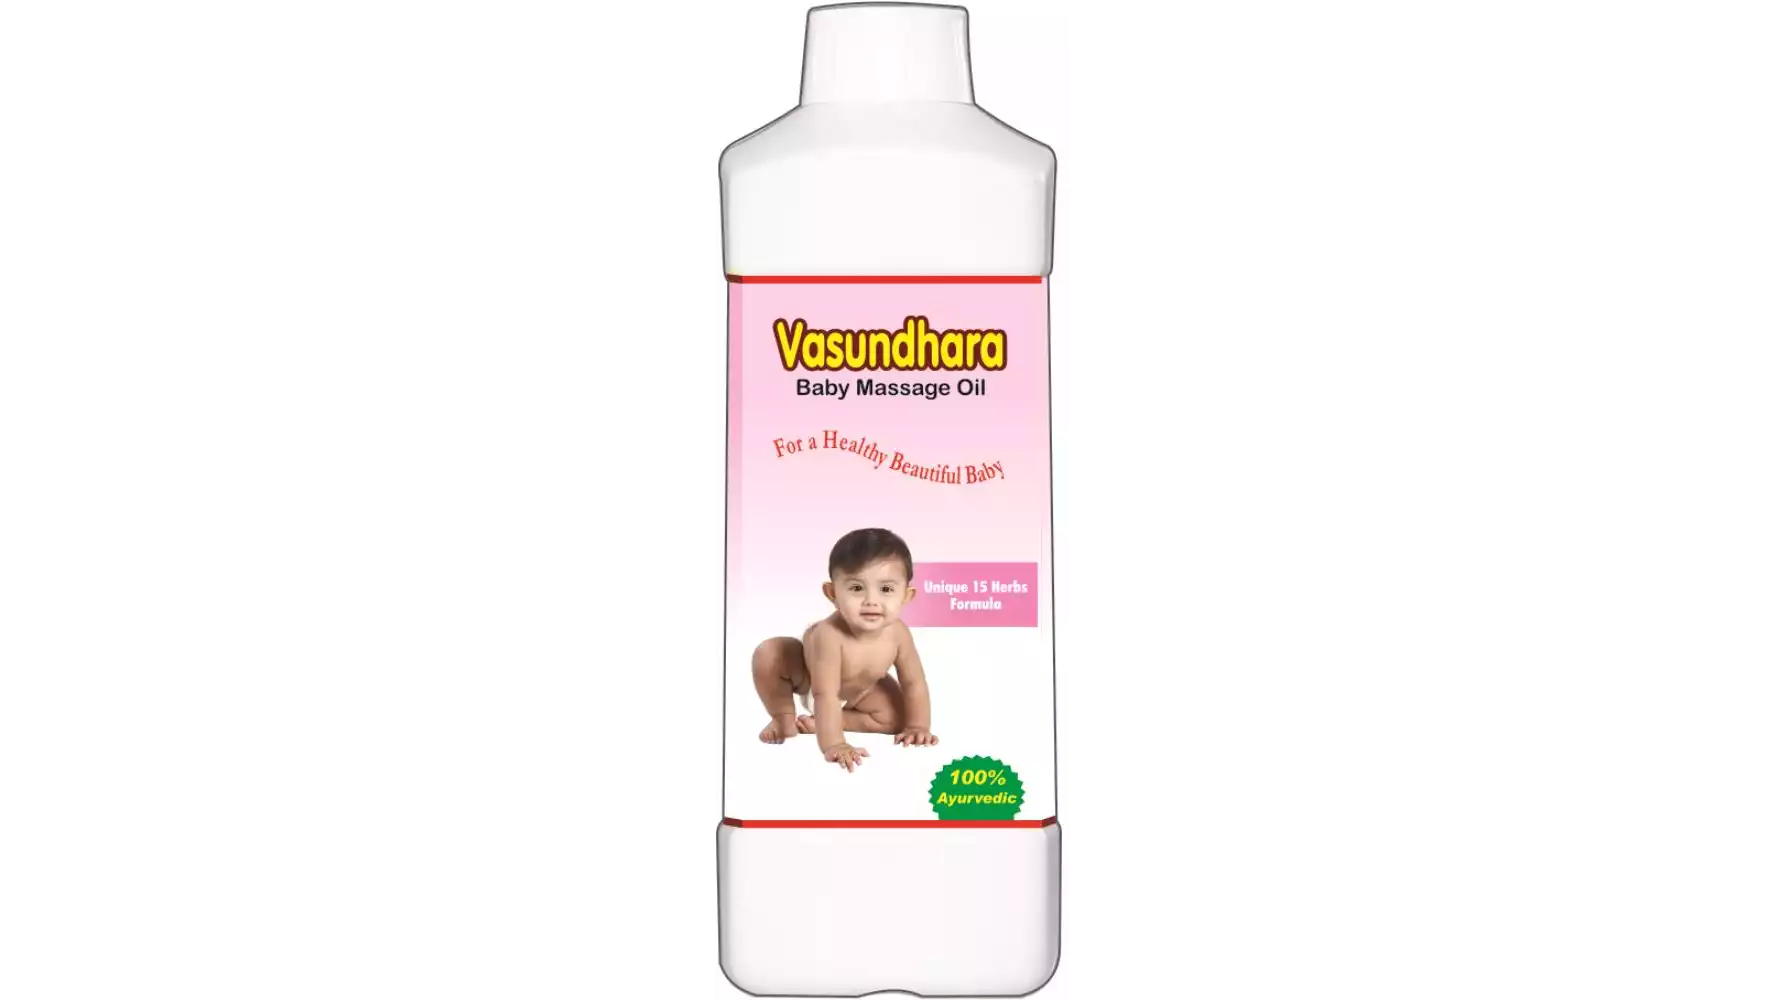 Pitambari Vasundhara Baby Massage Oil (1liter)